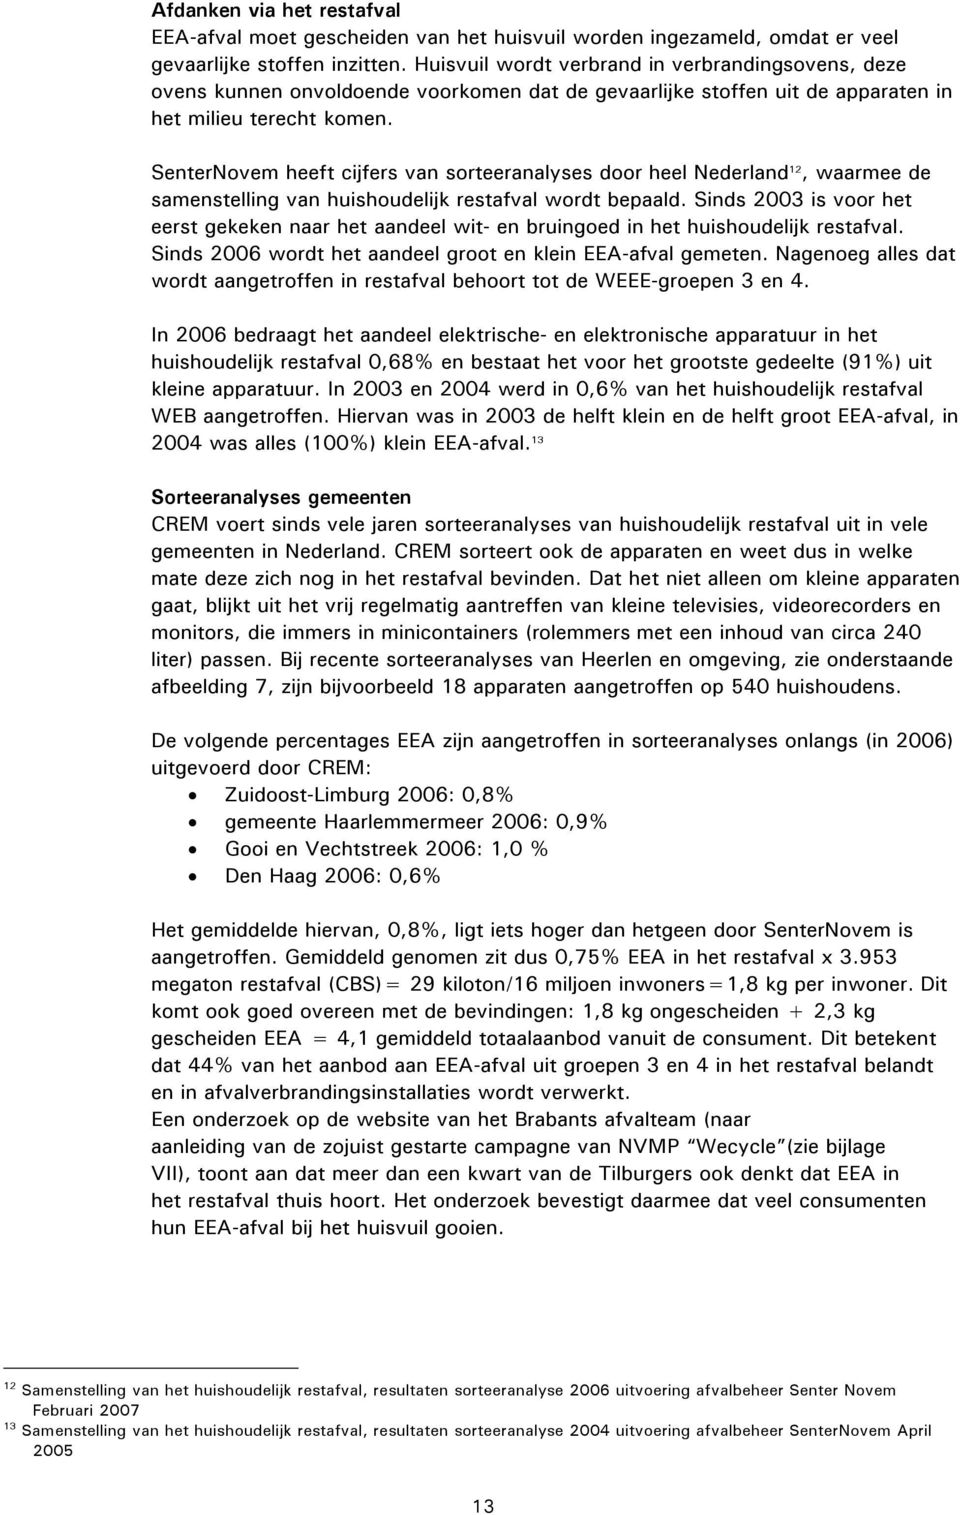 SenterNovem heeft cijfers van sorteeranalyses door heel Nederland 12, waarmee de samenstelling van huishoudelijk restafval wordt bepaald.